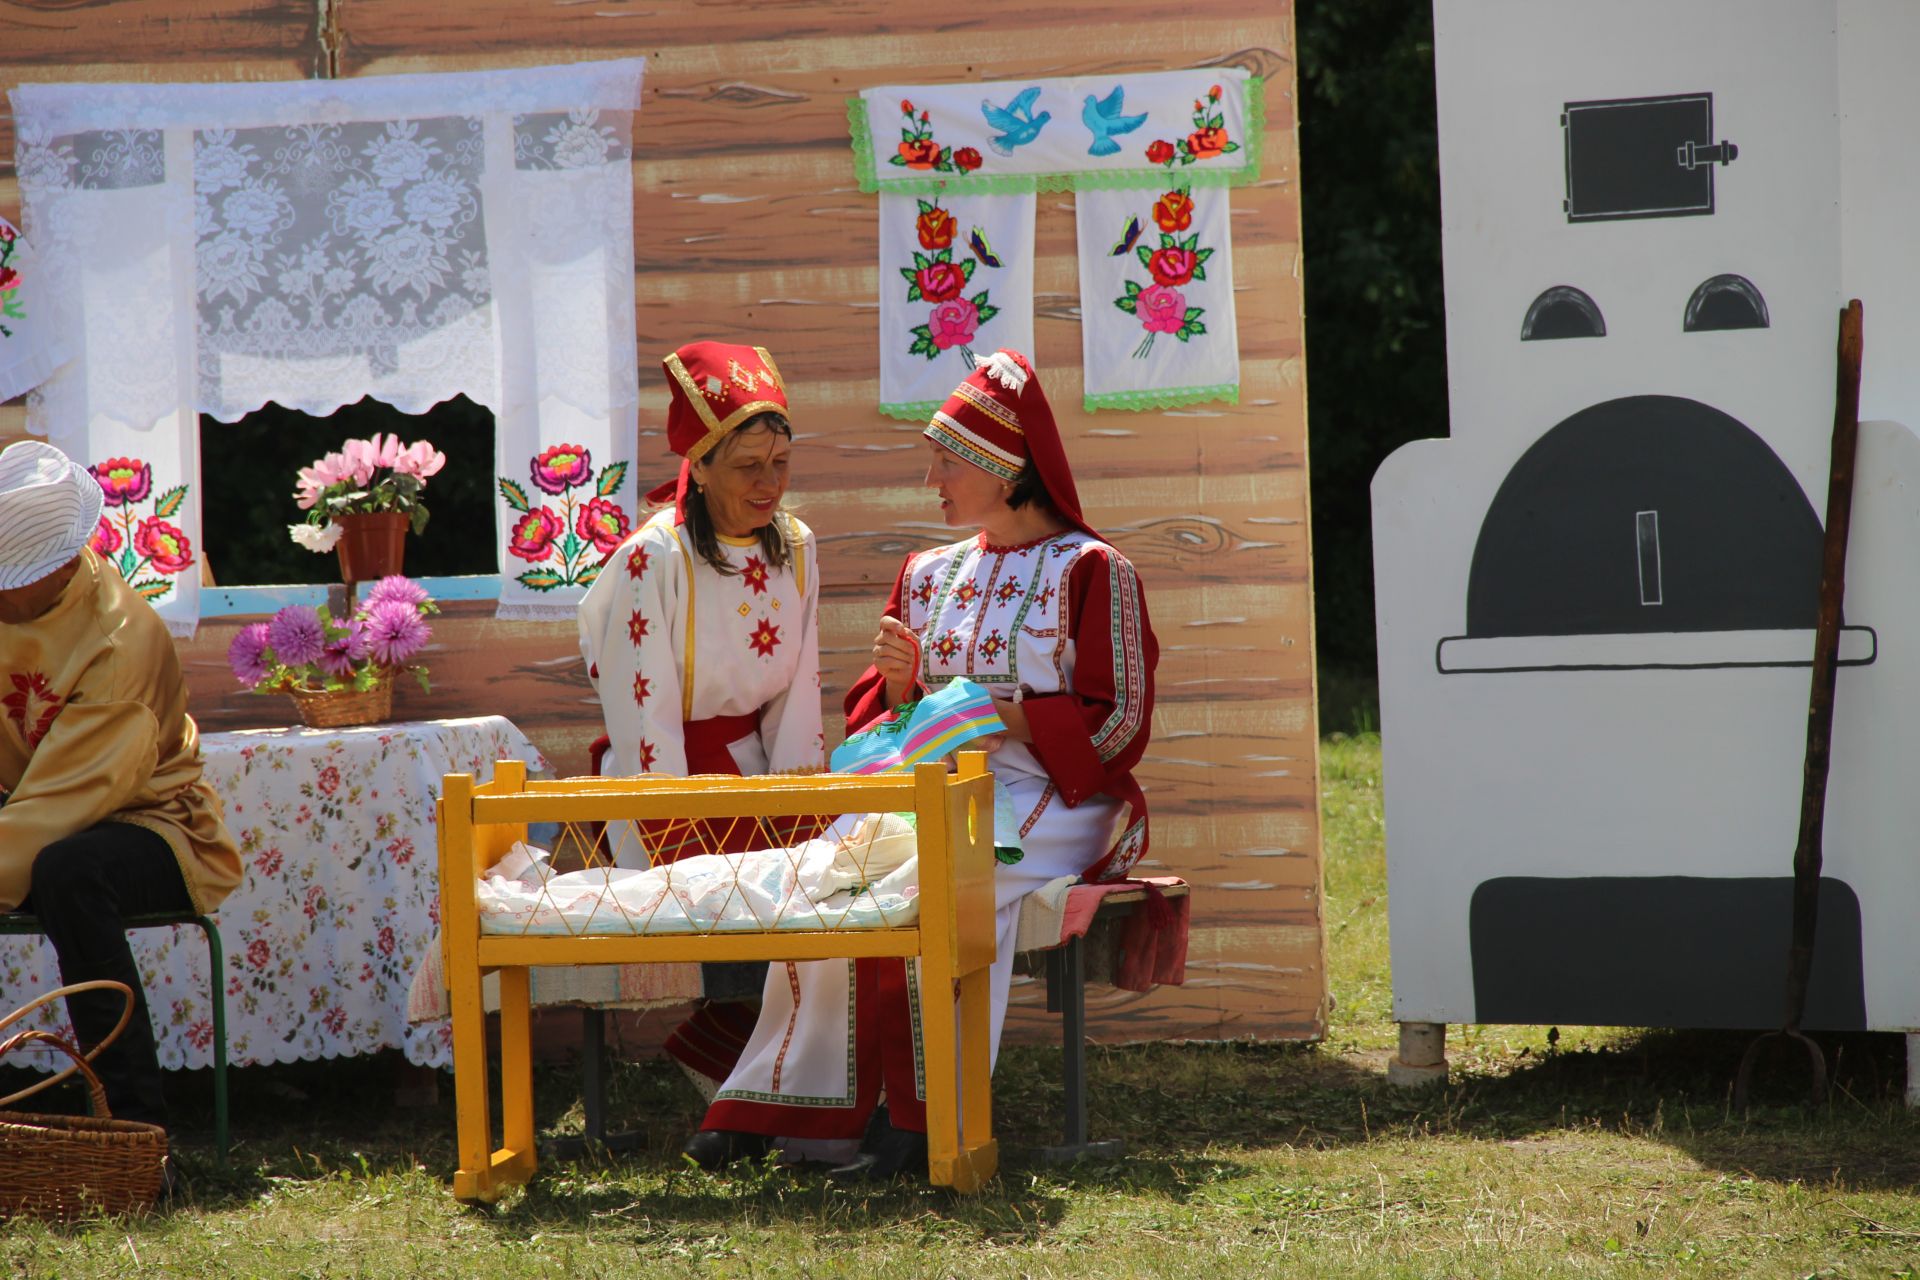 Республиканский фестиваль мордовской культуры "Валда шинясь"